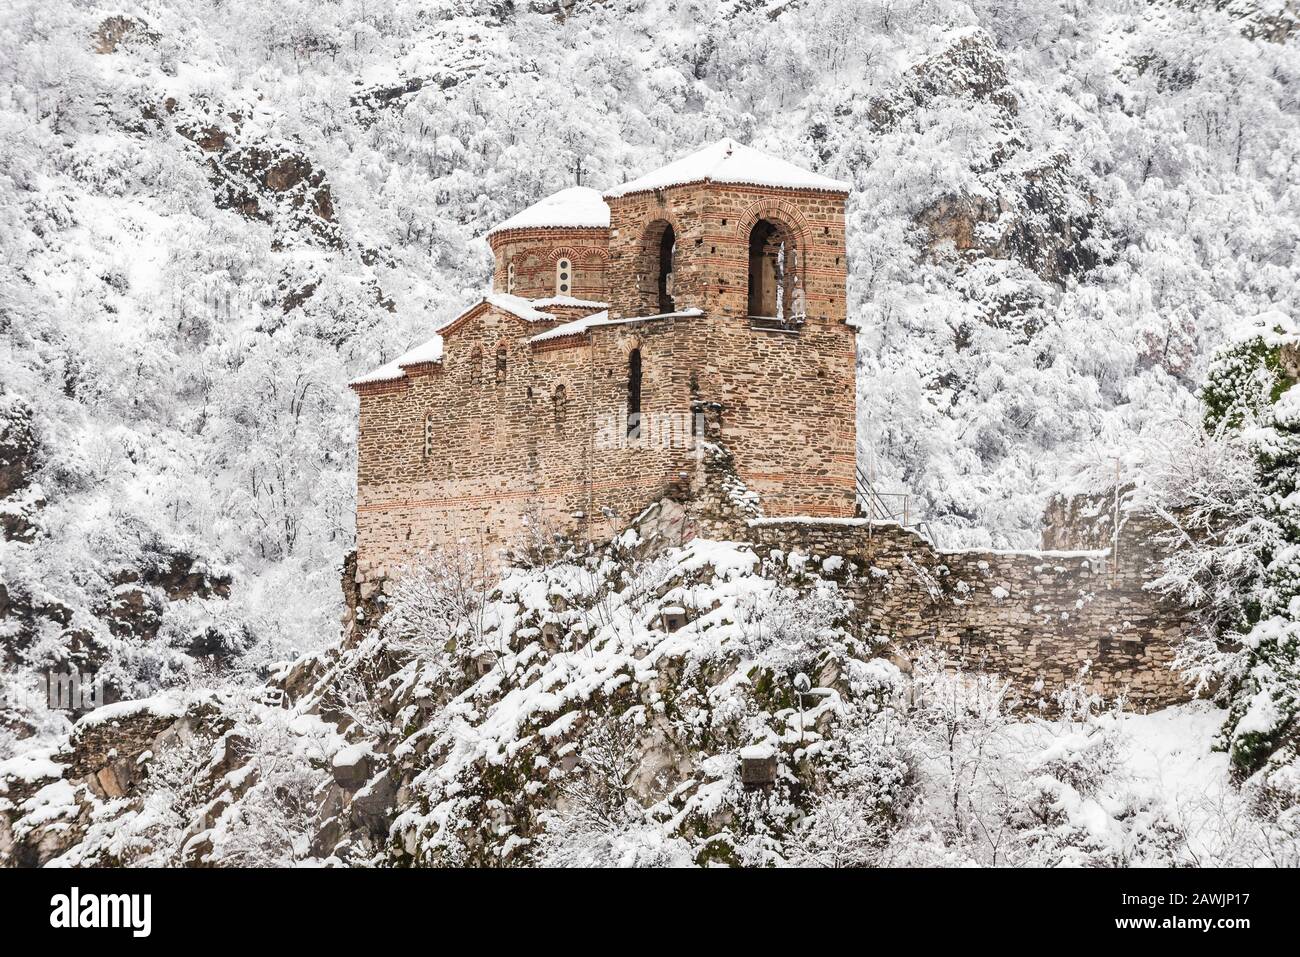 L'Église de la Sainte mère de Dieu dans la forteresse d'Asen en hiver. Ancienne forteresse médiévale près de la ville d'Asenovgrad. Région de Plovdiv, Bulgarie Banque D'Images